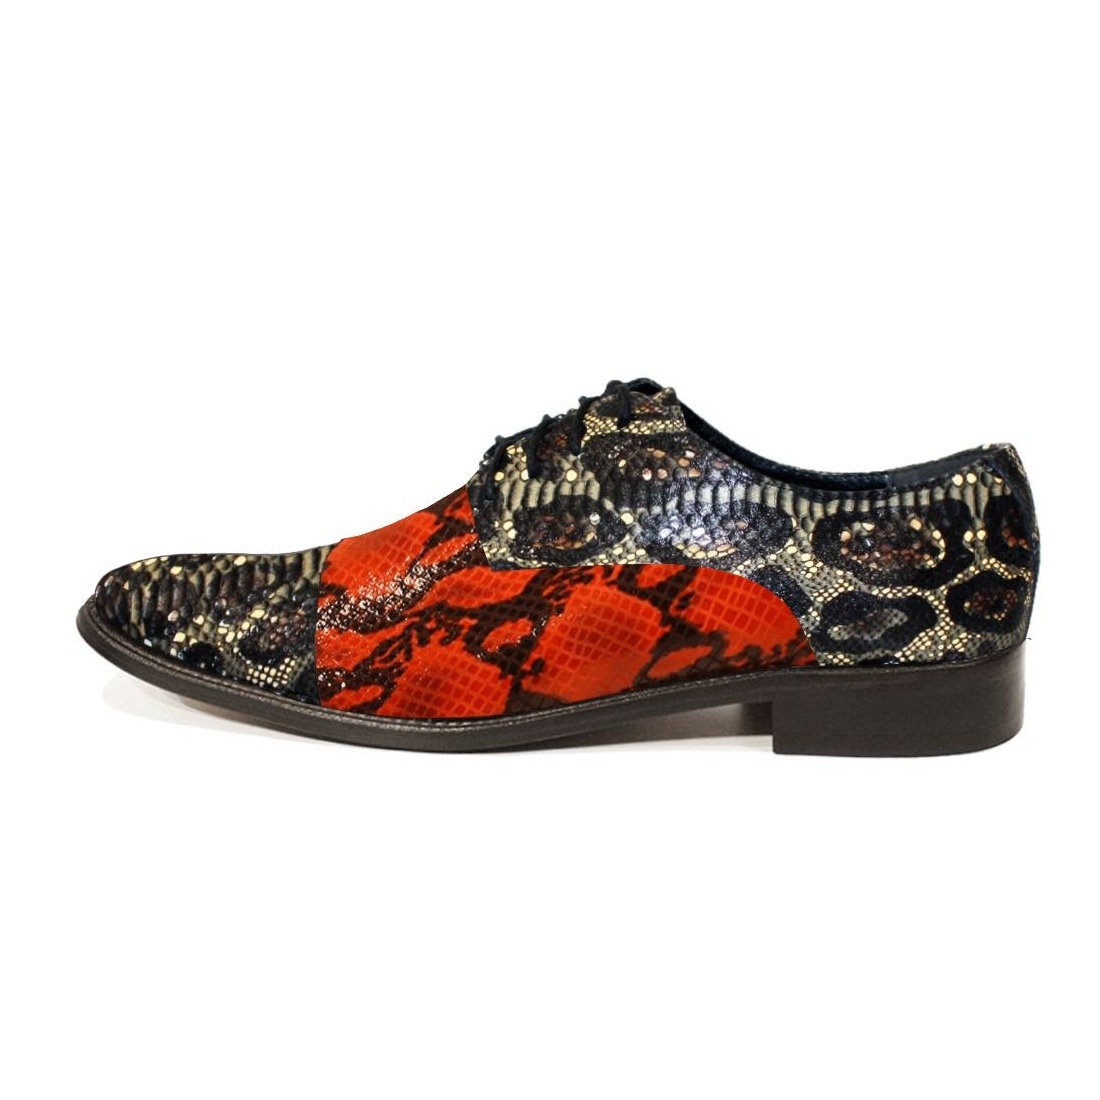 Modello Magello - Chaussure Classique - Handmade Colorful Italian Leather Shoes